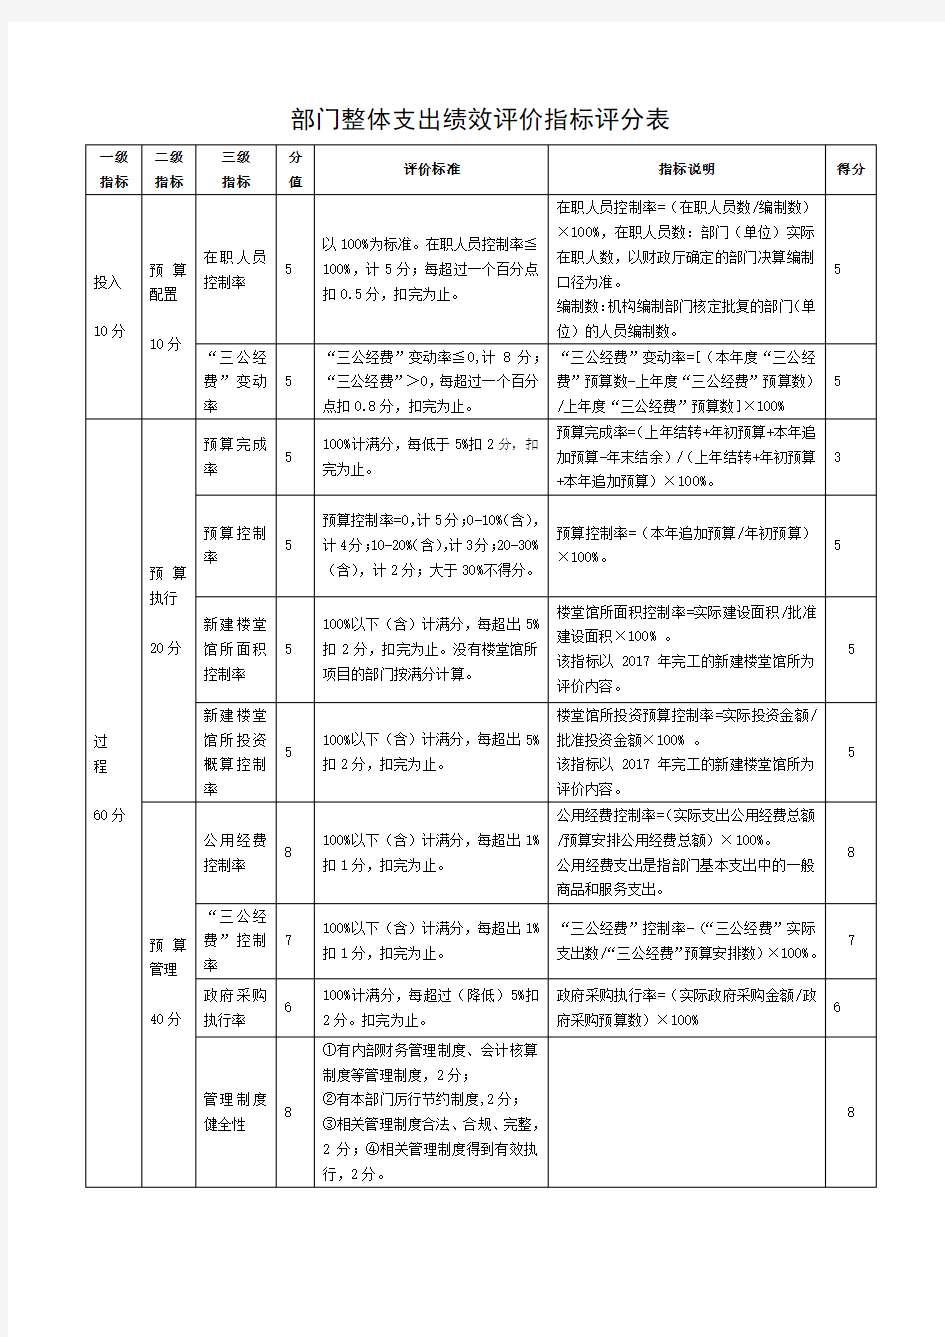 湖南省统计局部门整体支出绩效评价指标评分表、部门整体支出绩效评价基础数据表